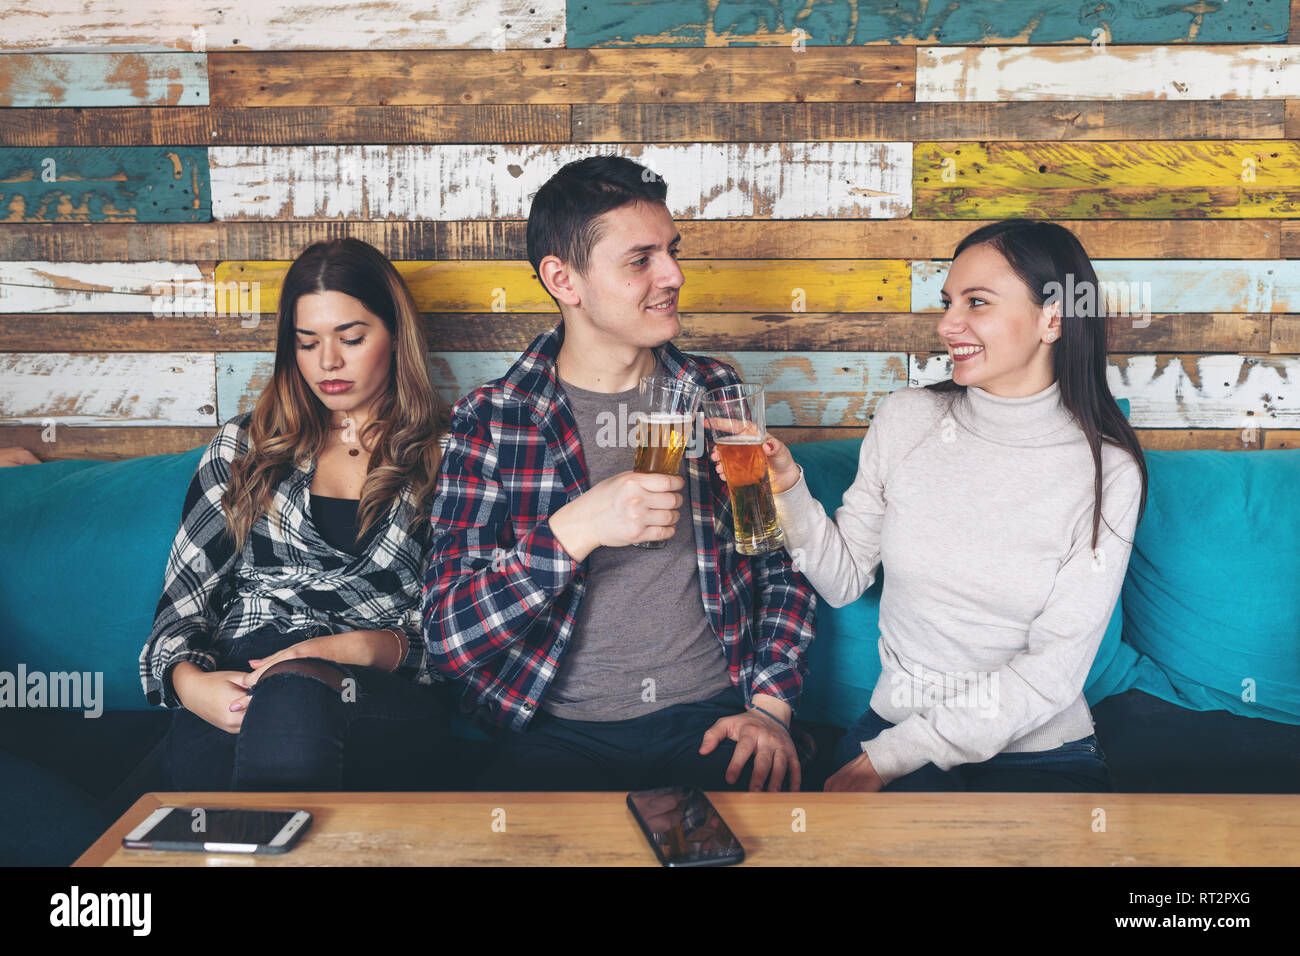 Feliz joven bebiendo cerveza con joven y socializar ignorando otros celoso triste mujer sentada junto a ellos en el rústico bar restaurante. Amor y j Foto de stock